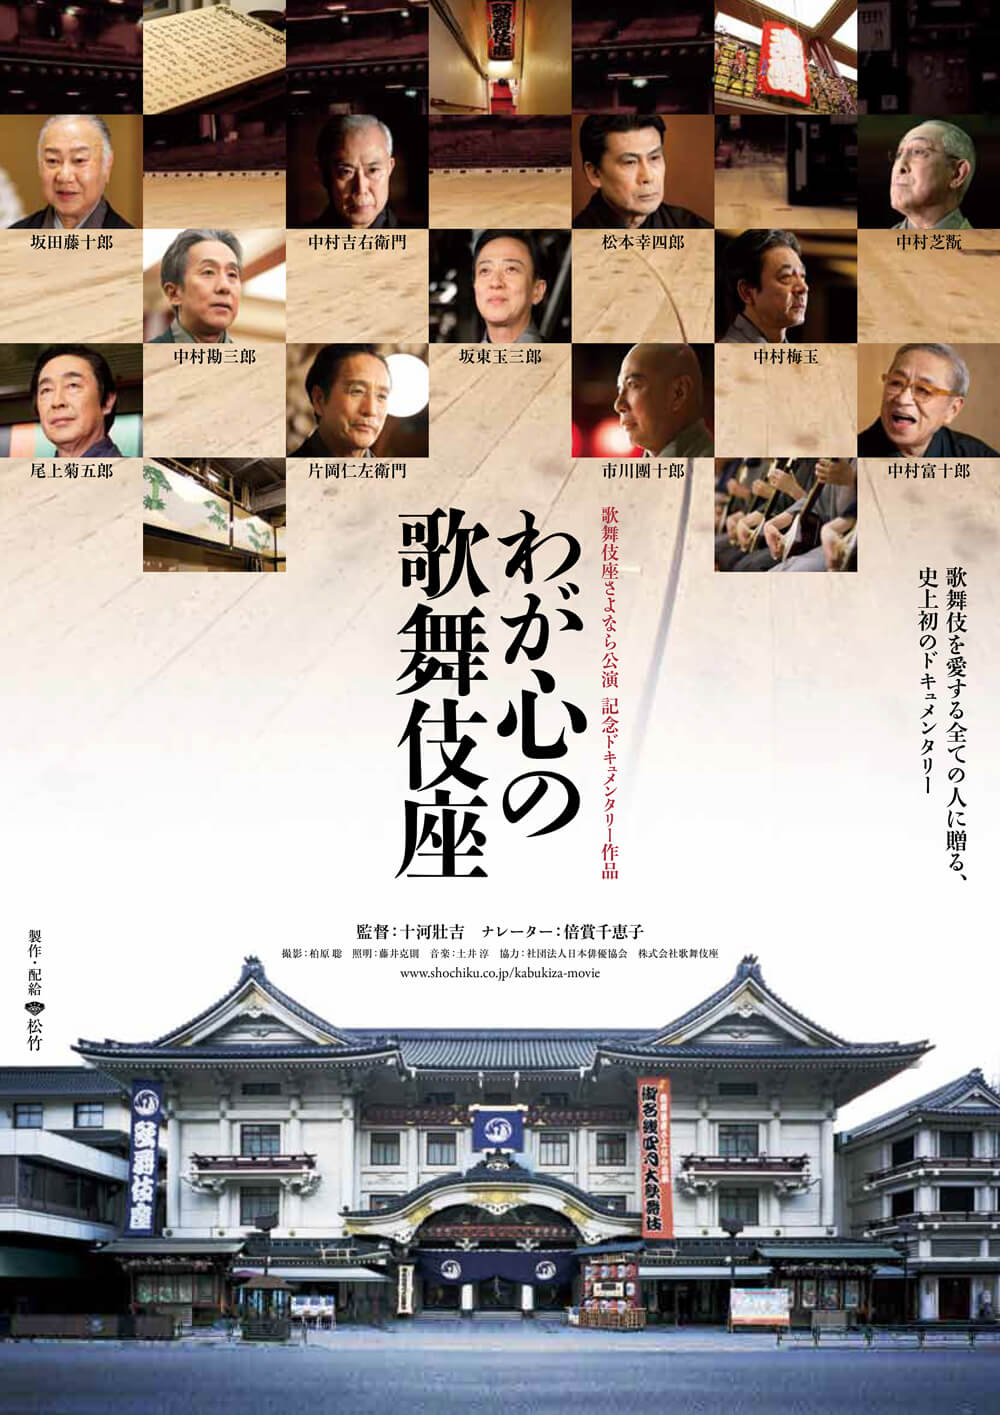 シネマ歌舞伎『わが心の歌舞伎座』割引キャンペーンのお知らせ